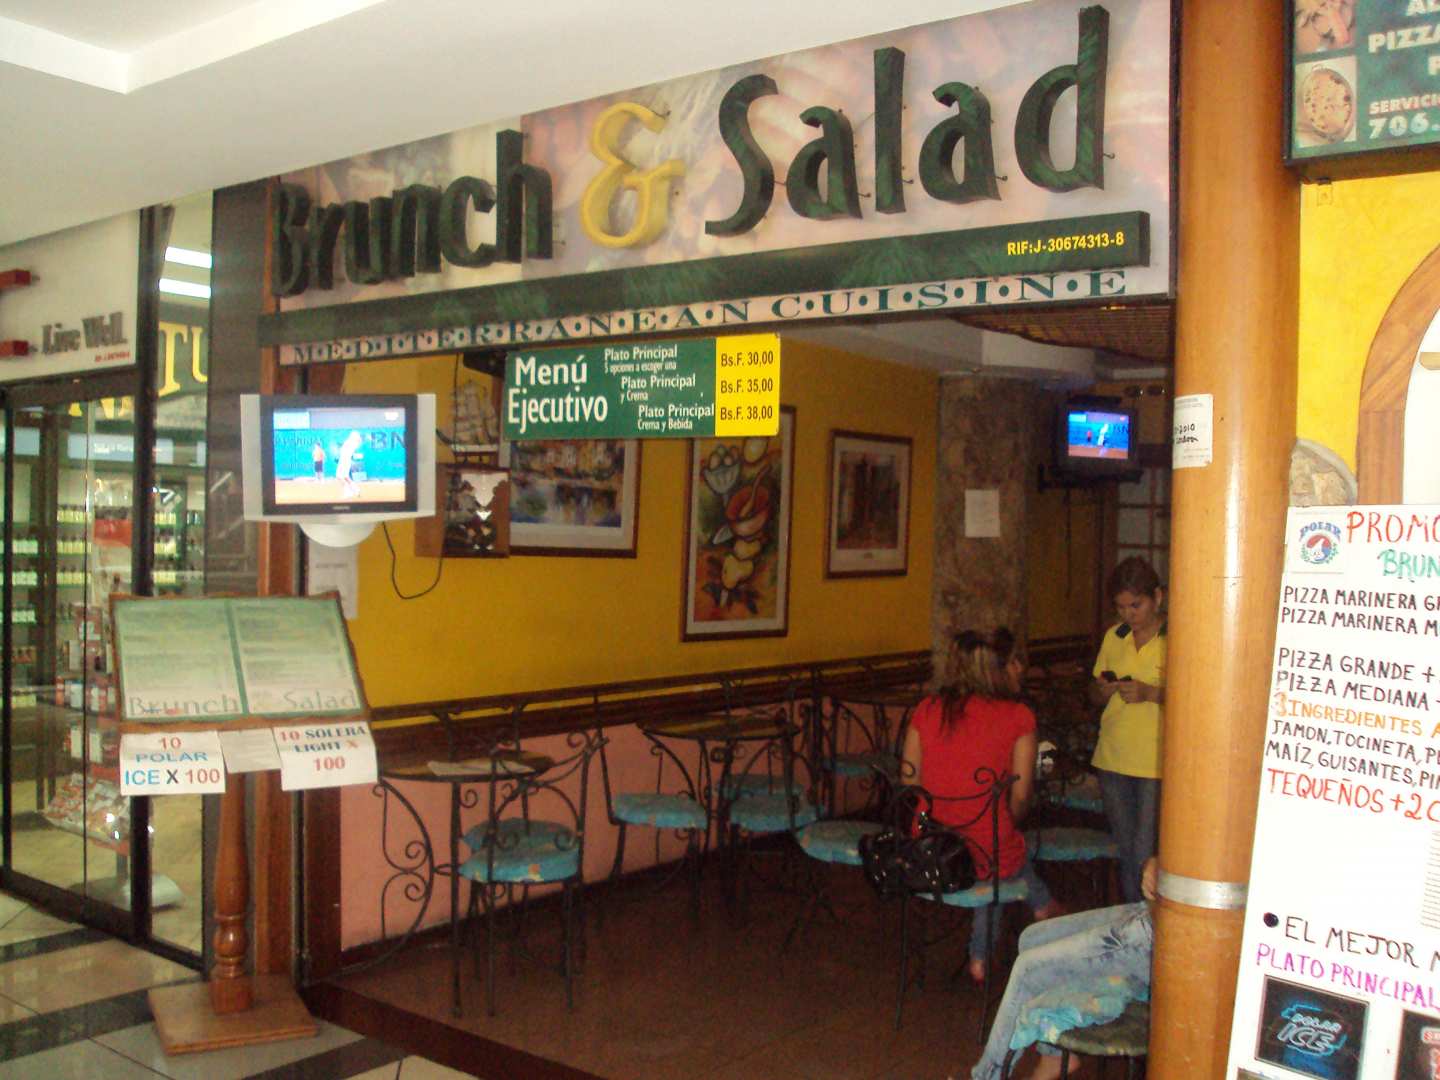 Brunch & Salad